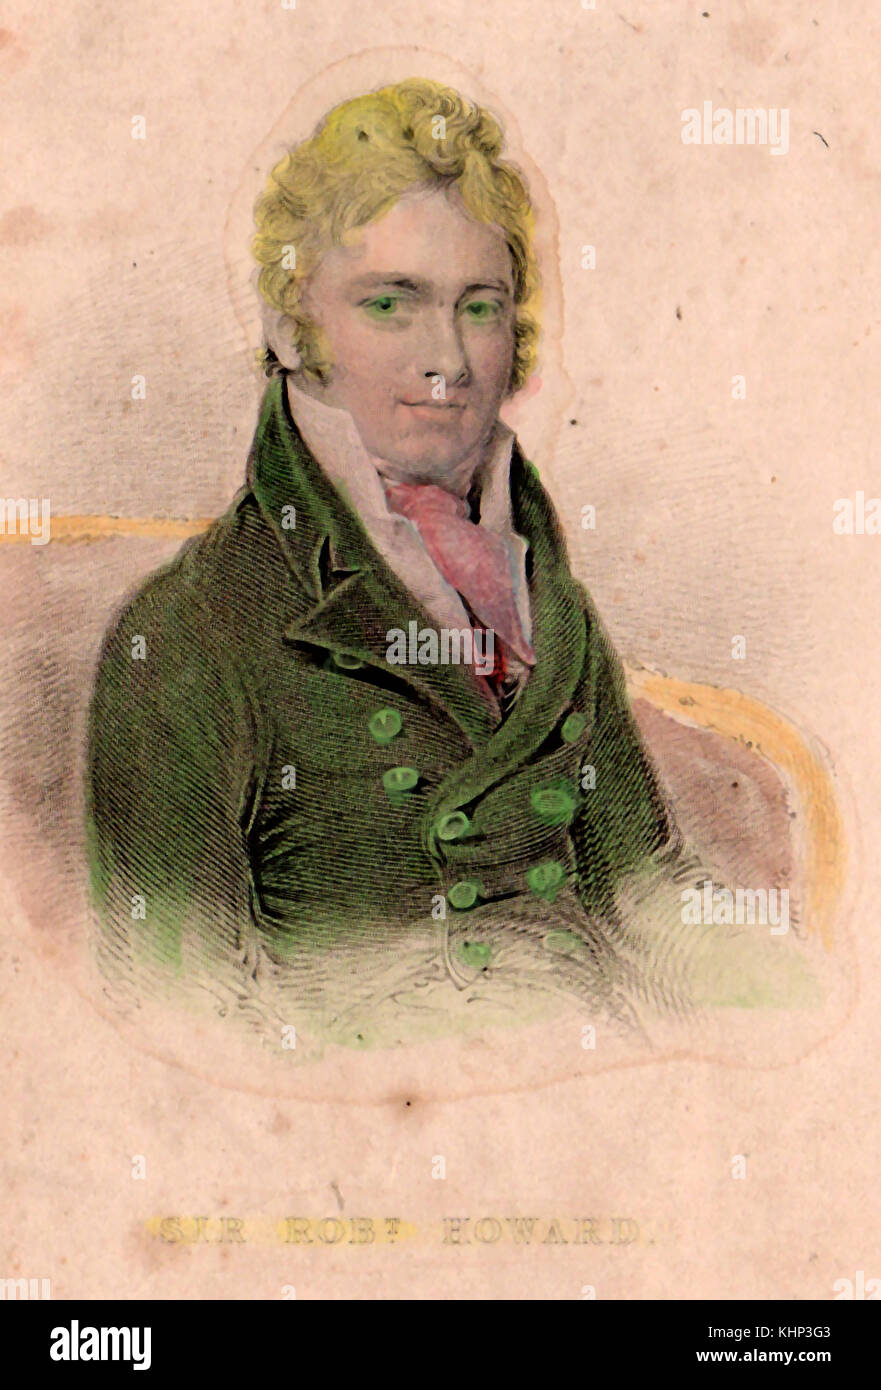 Ein frühes Alter hand farbigen Porträt drucken von Sir Robert Howard (1757-1815), der später die 2. Earl von Wicklow in Irland. Mitglied des Parlaments für St Johnstown (1776 - 1789) Stockfoto